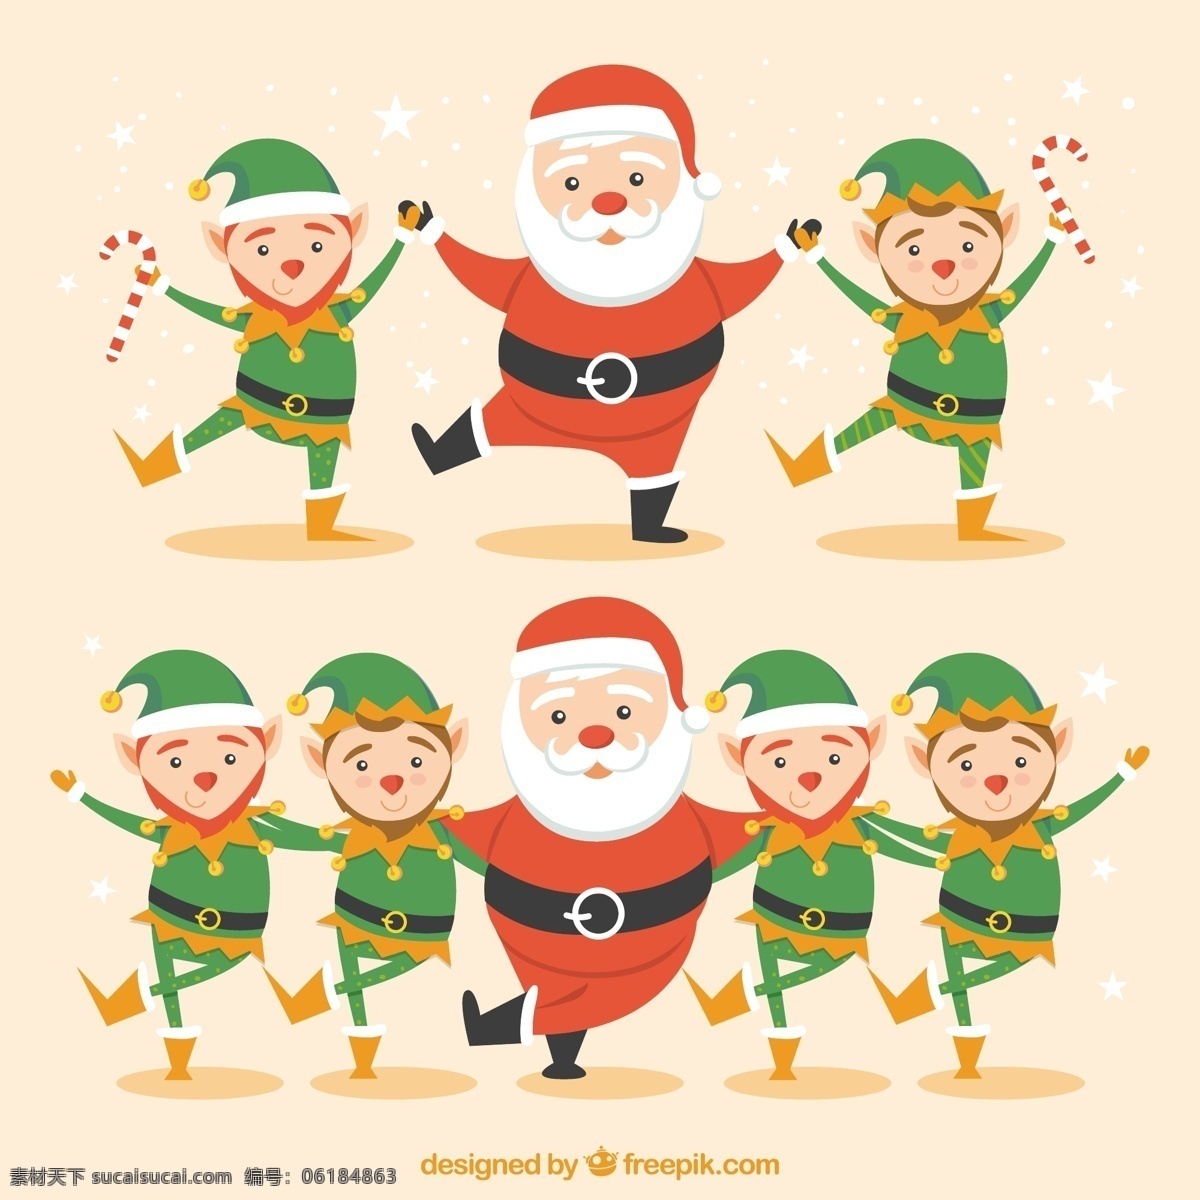 卡通 圣诞老人 精灵 圣诞节 舞蹈 快乐 圣诞 冬天 字符 庆典 节日 娱乐 搞笑 人物 节假日 跳舞